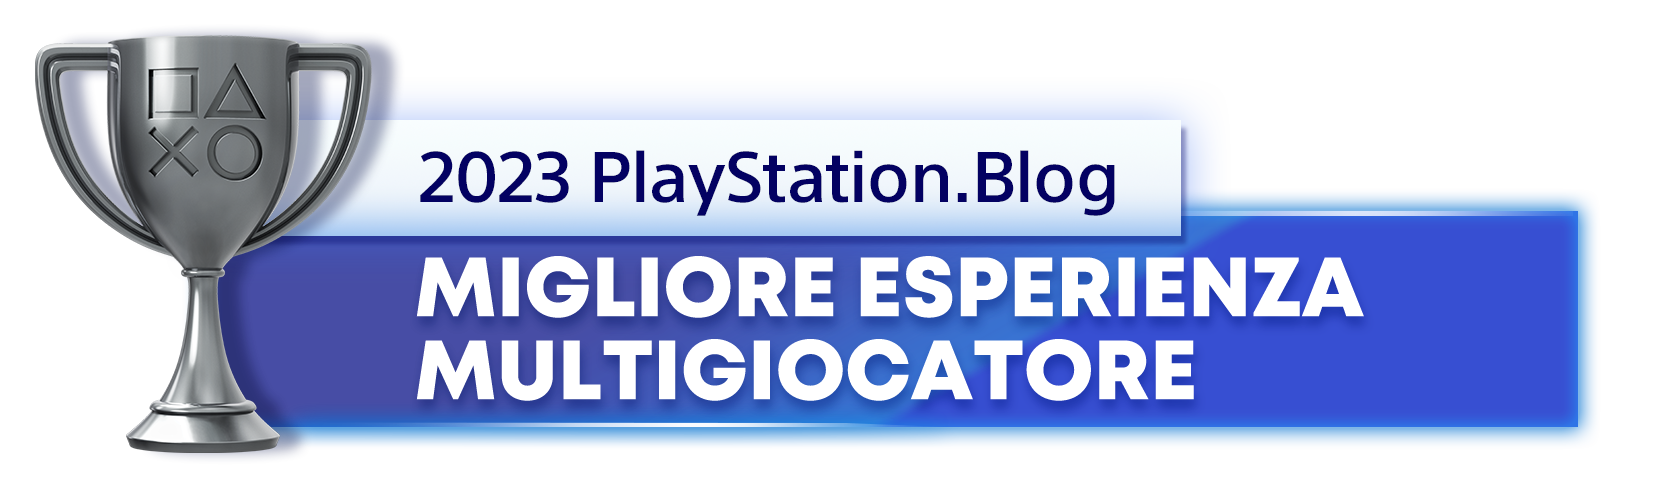  "Vincitore del trofeo argento per il titolo di Migliore esperienza multigiocatore 2023 del PlayStation.Blog"